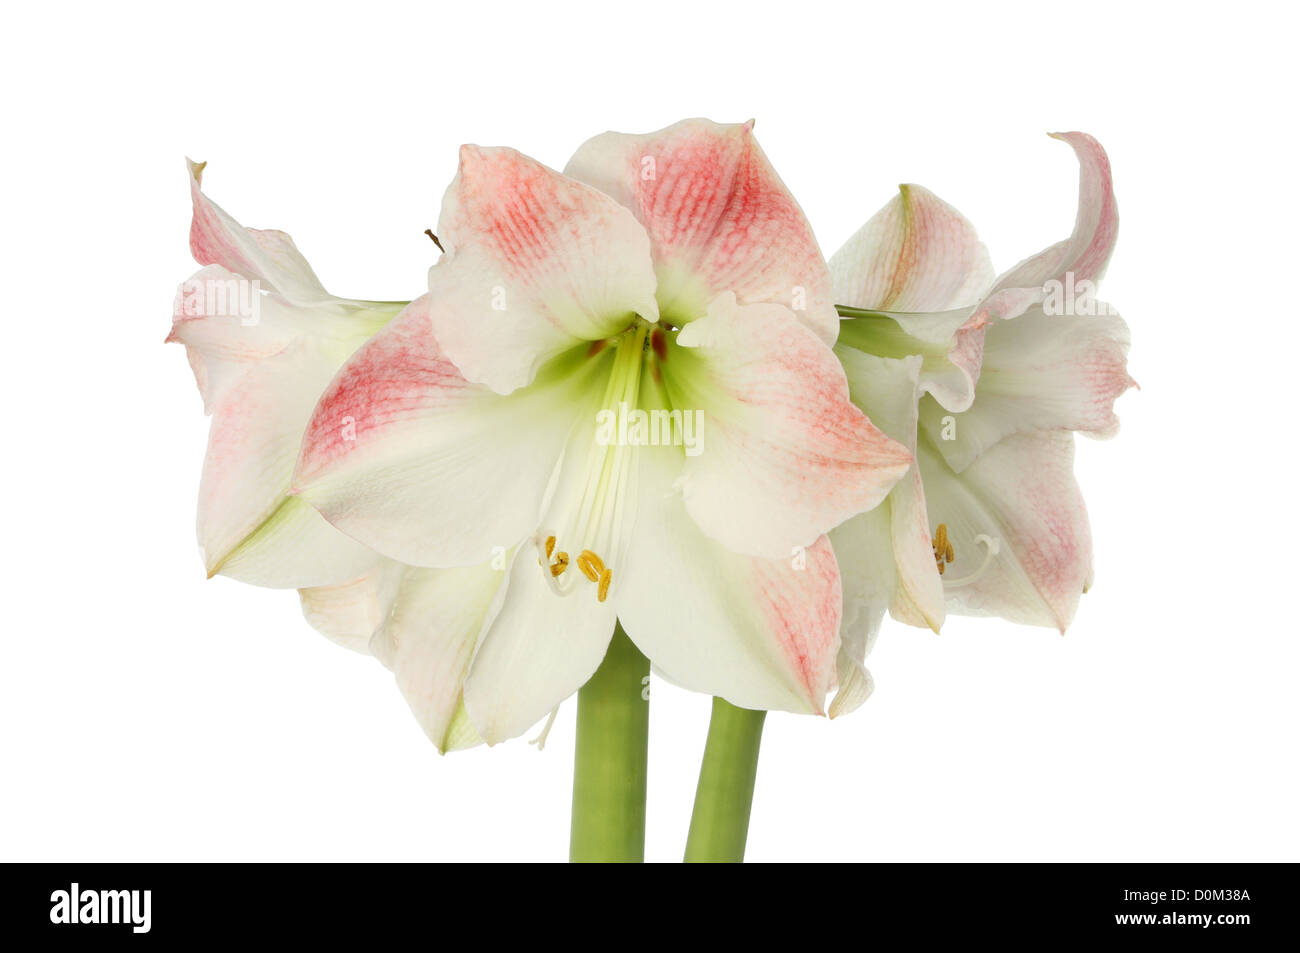 Amaryllis, hipeastrum, flowers isolated against white Stock Photo